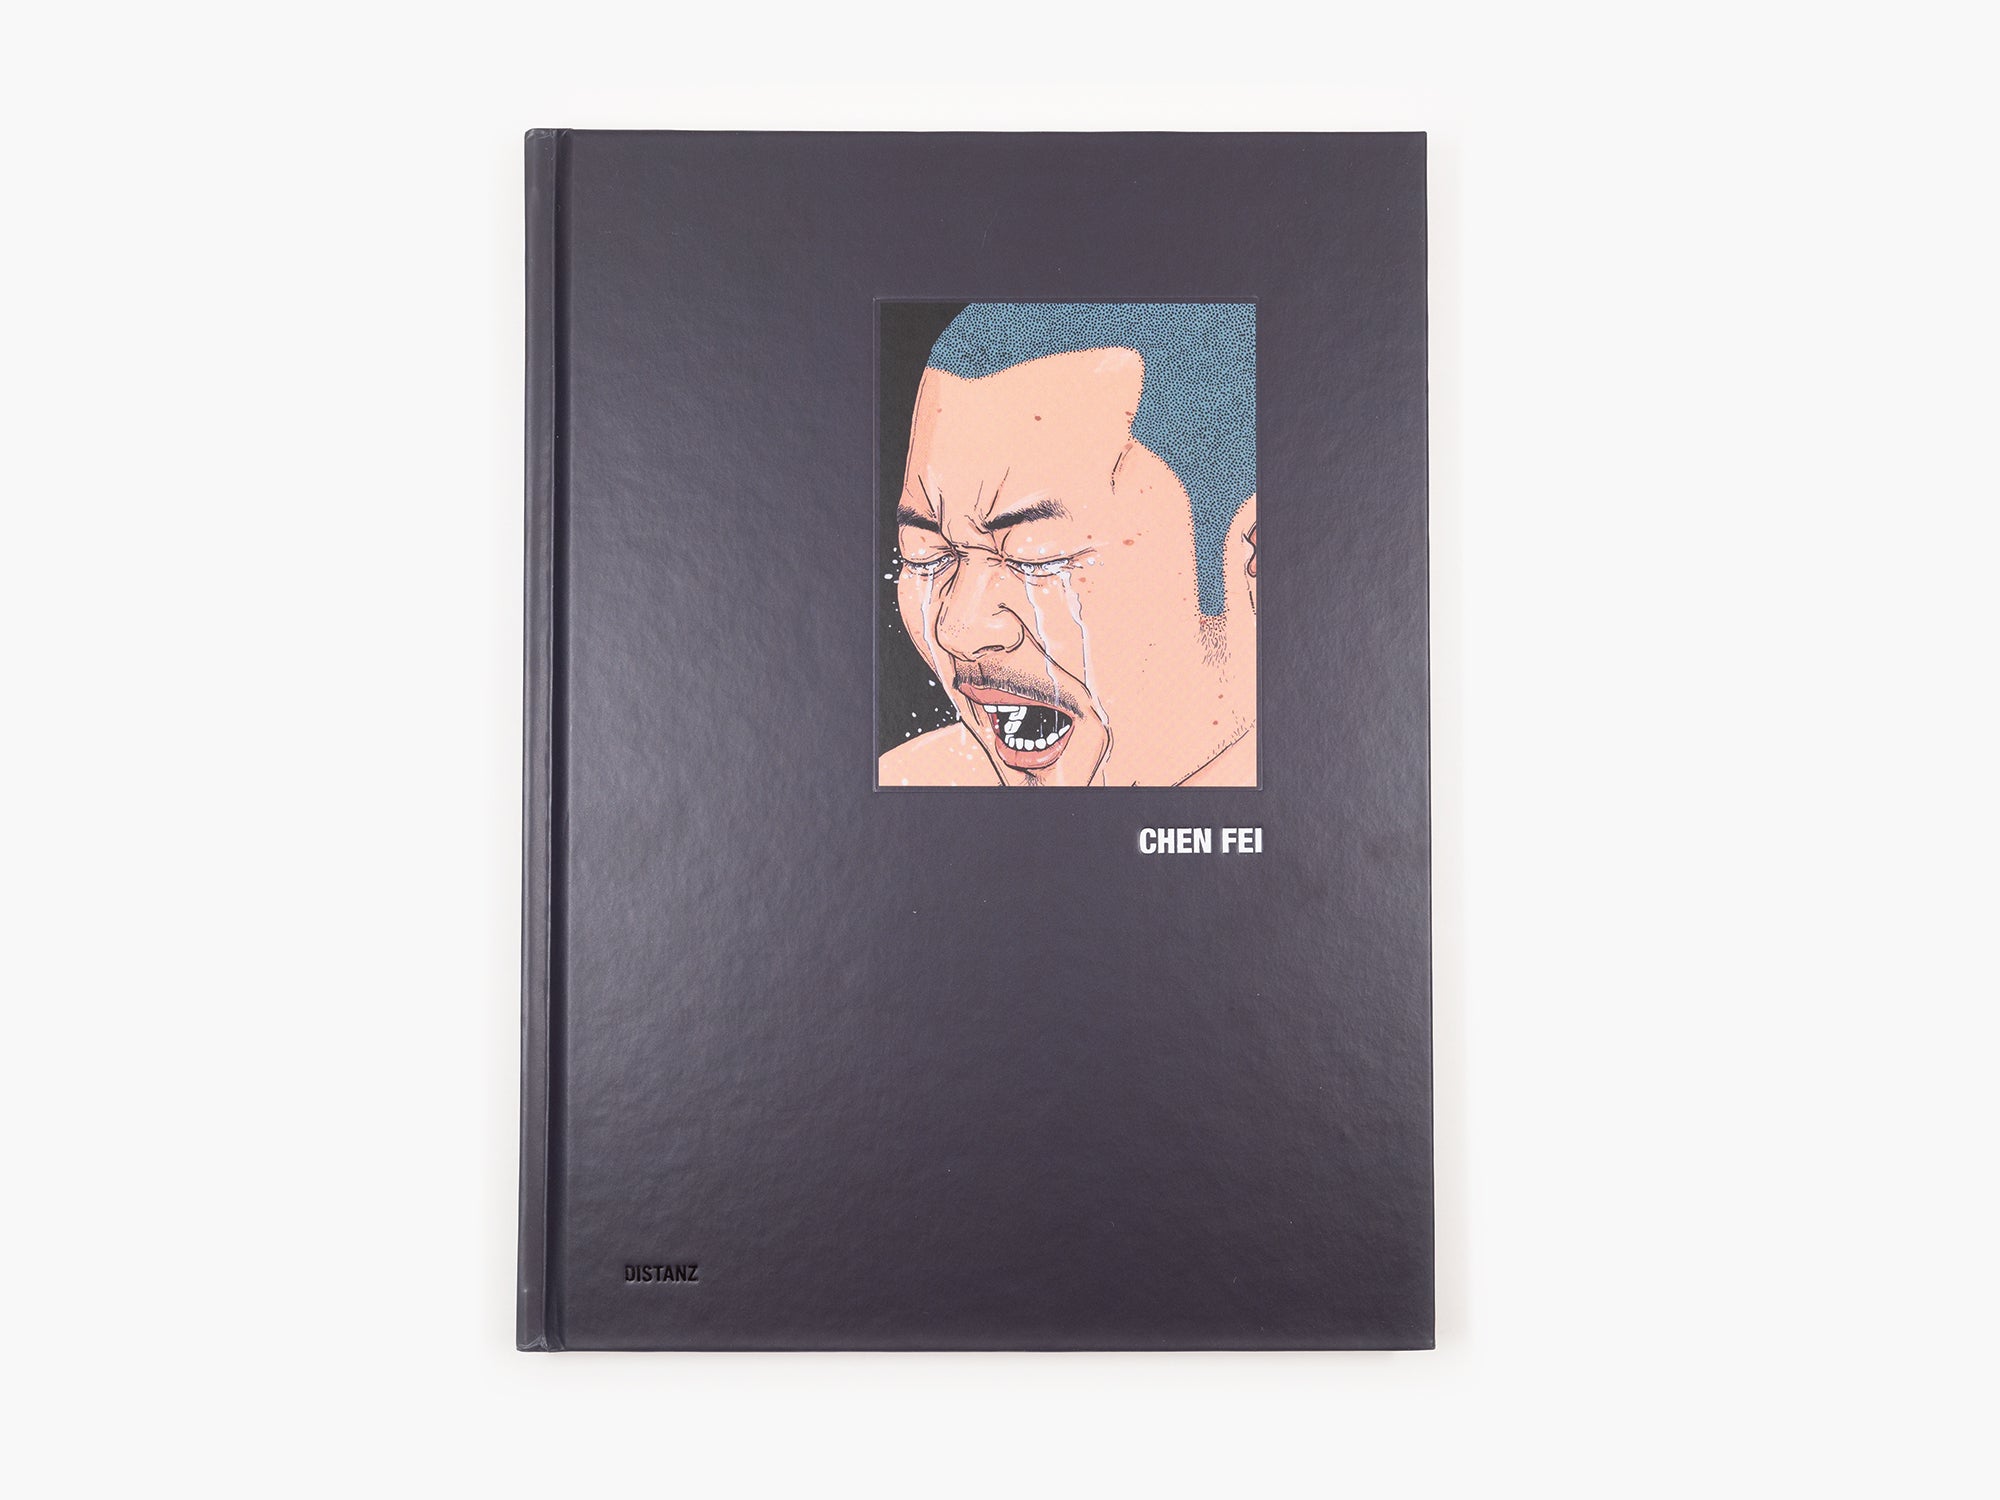 Chen Fei - Distanz Catalogue